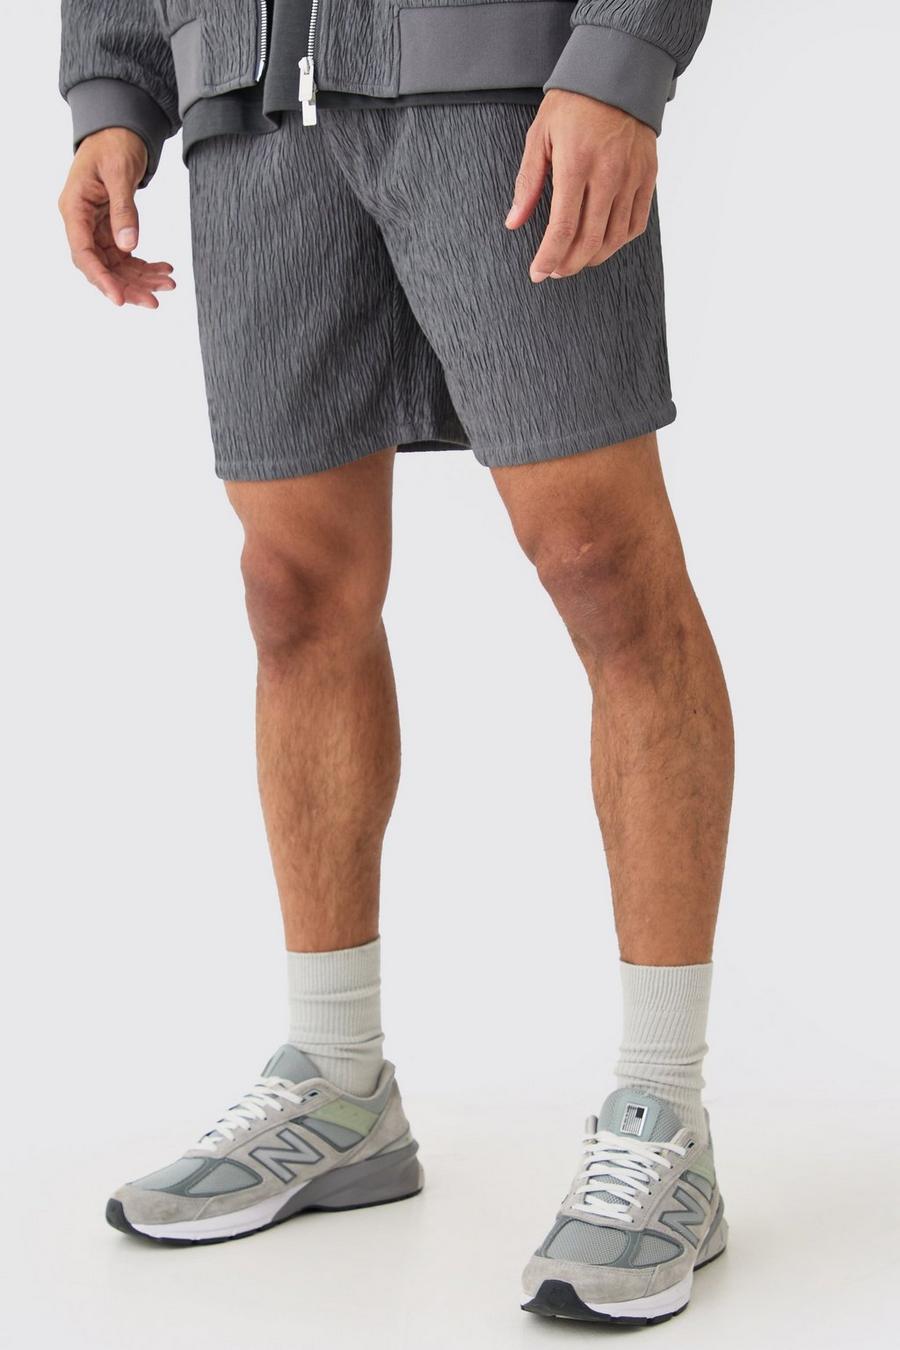 Grey blue Nette Satijnen Shorts Met Textuur